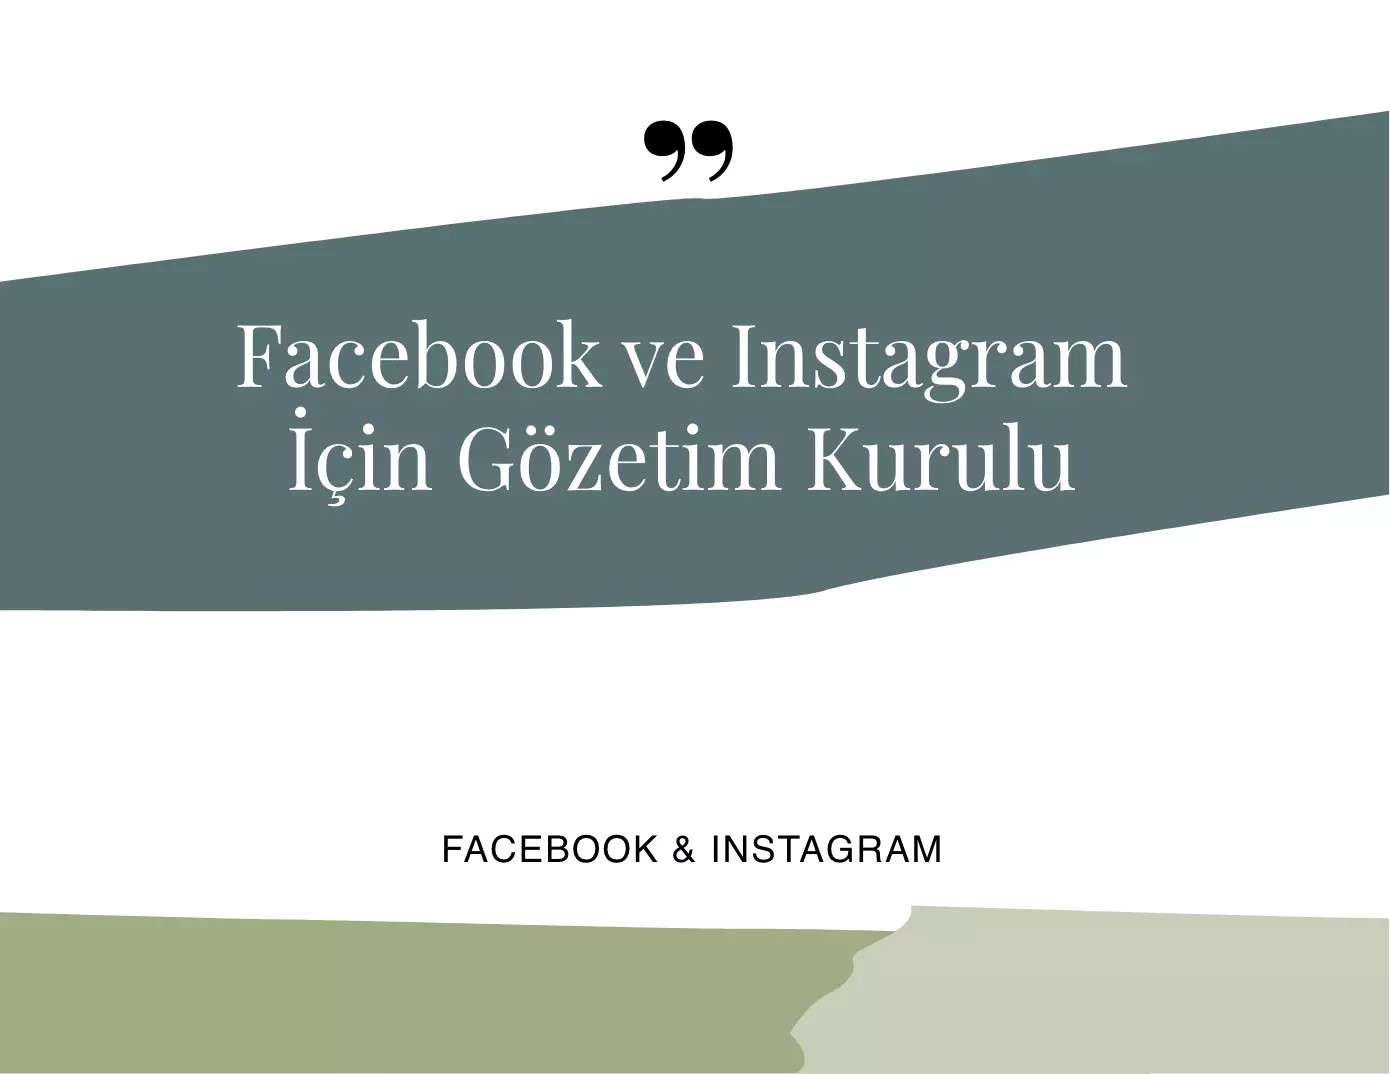 Facebook ve Instagram İçin Gözetim Kurulu!